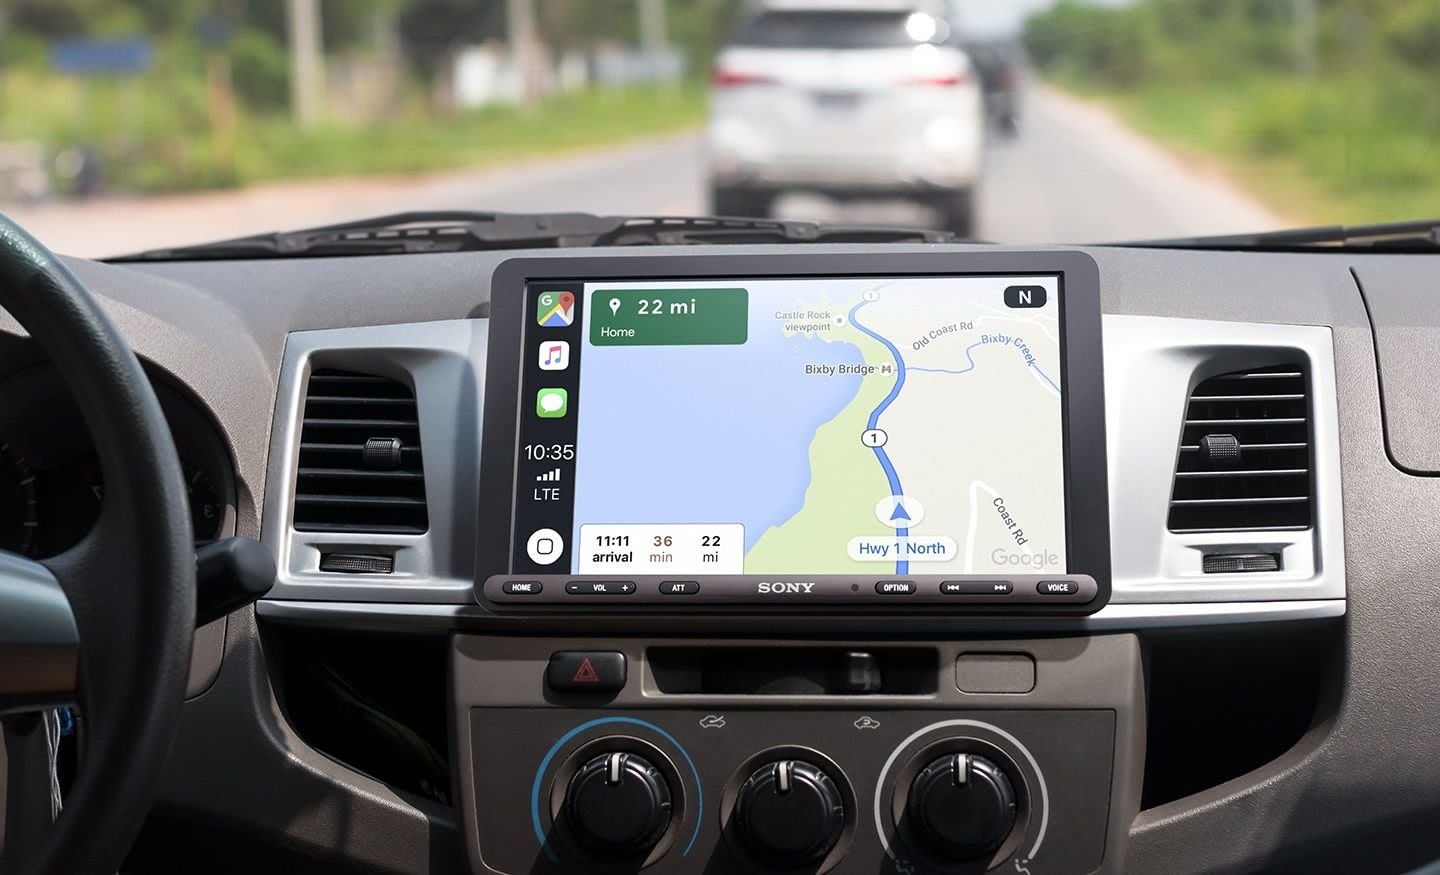 ソニーのapple Carplay Android Auto対応車載ディスプレイが約9インチの大画面へと進化 Engadget 日本版